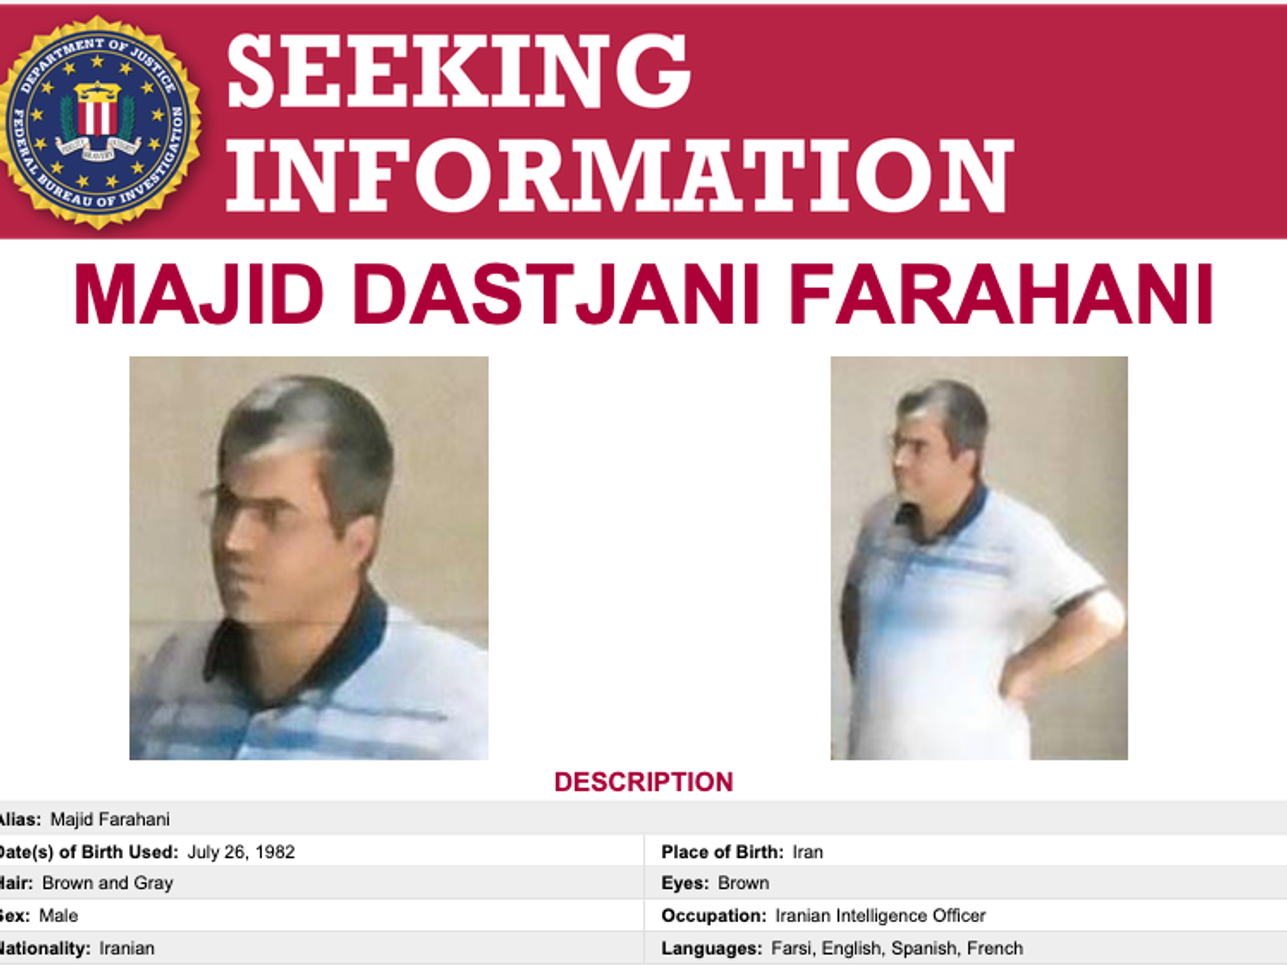 Screengrab of FBI wanted poster for Majid Dastjani Farahani